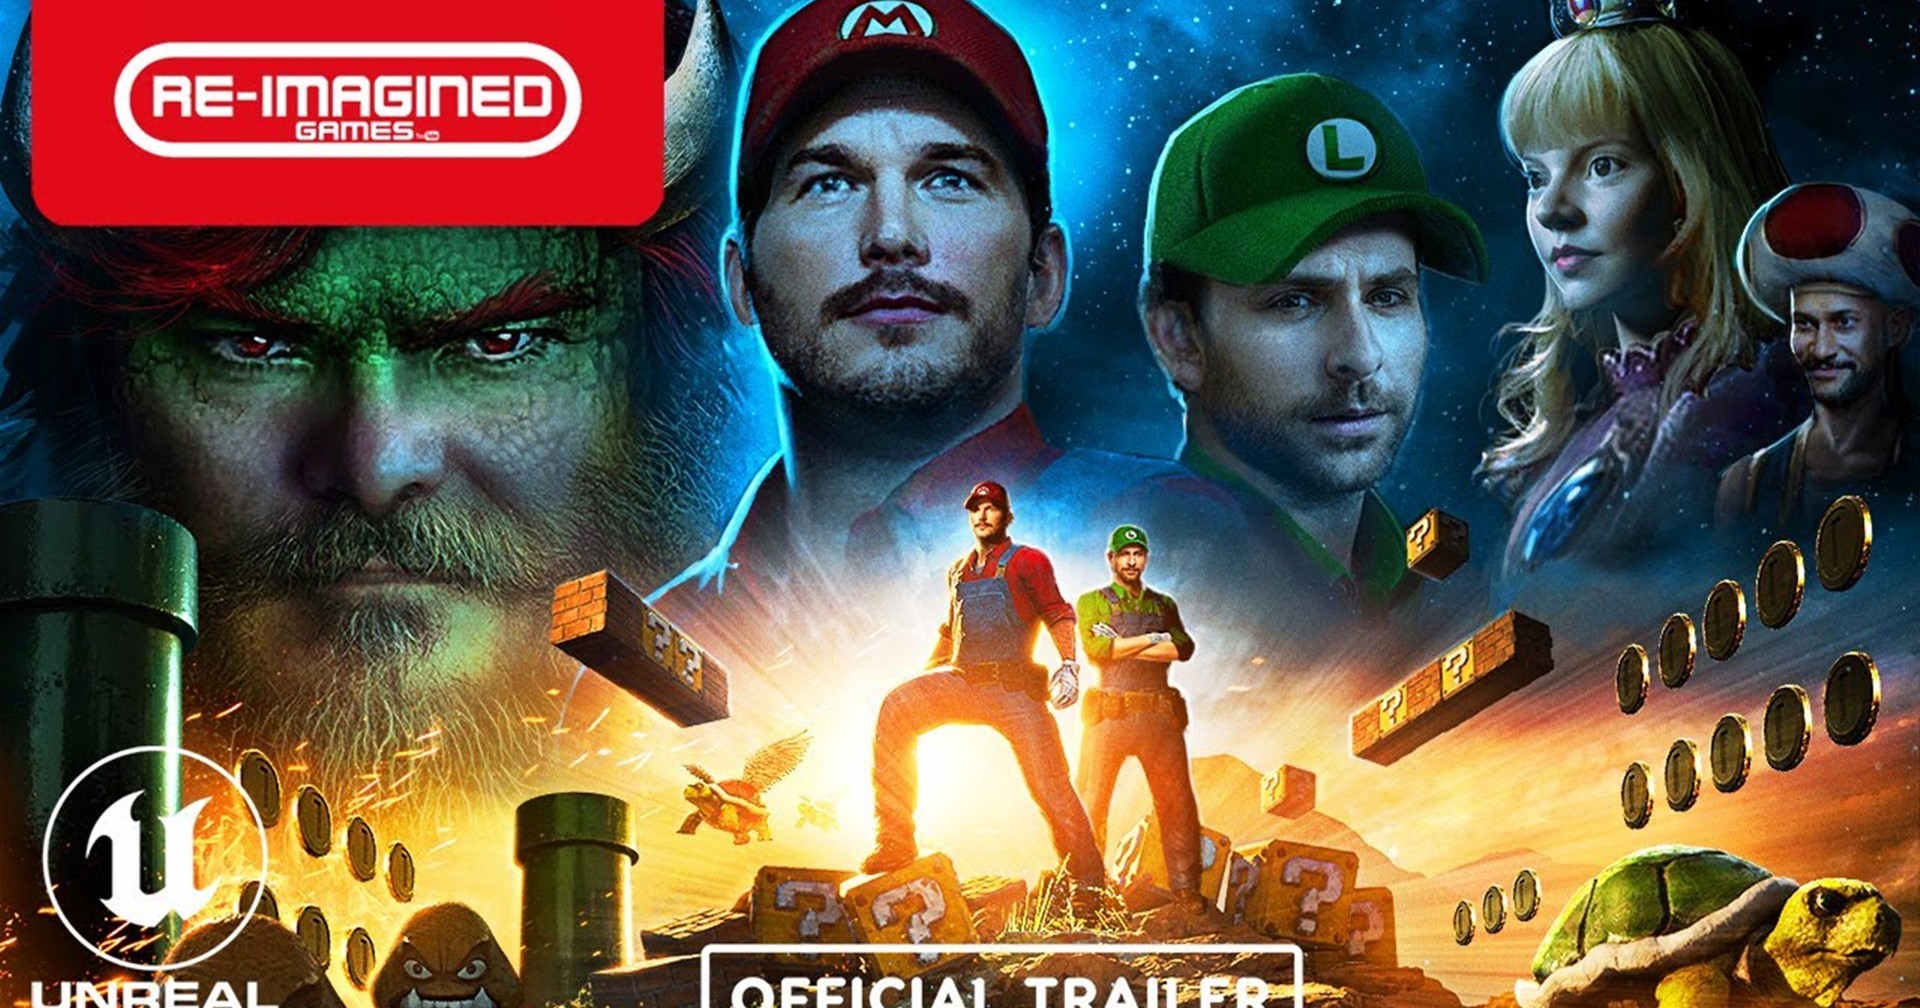 แฟนเกมสร้าง Super Mario ฉบับ Chris Pratt ด้วย Unreal